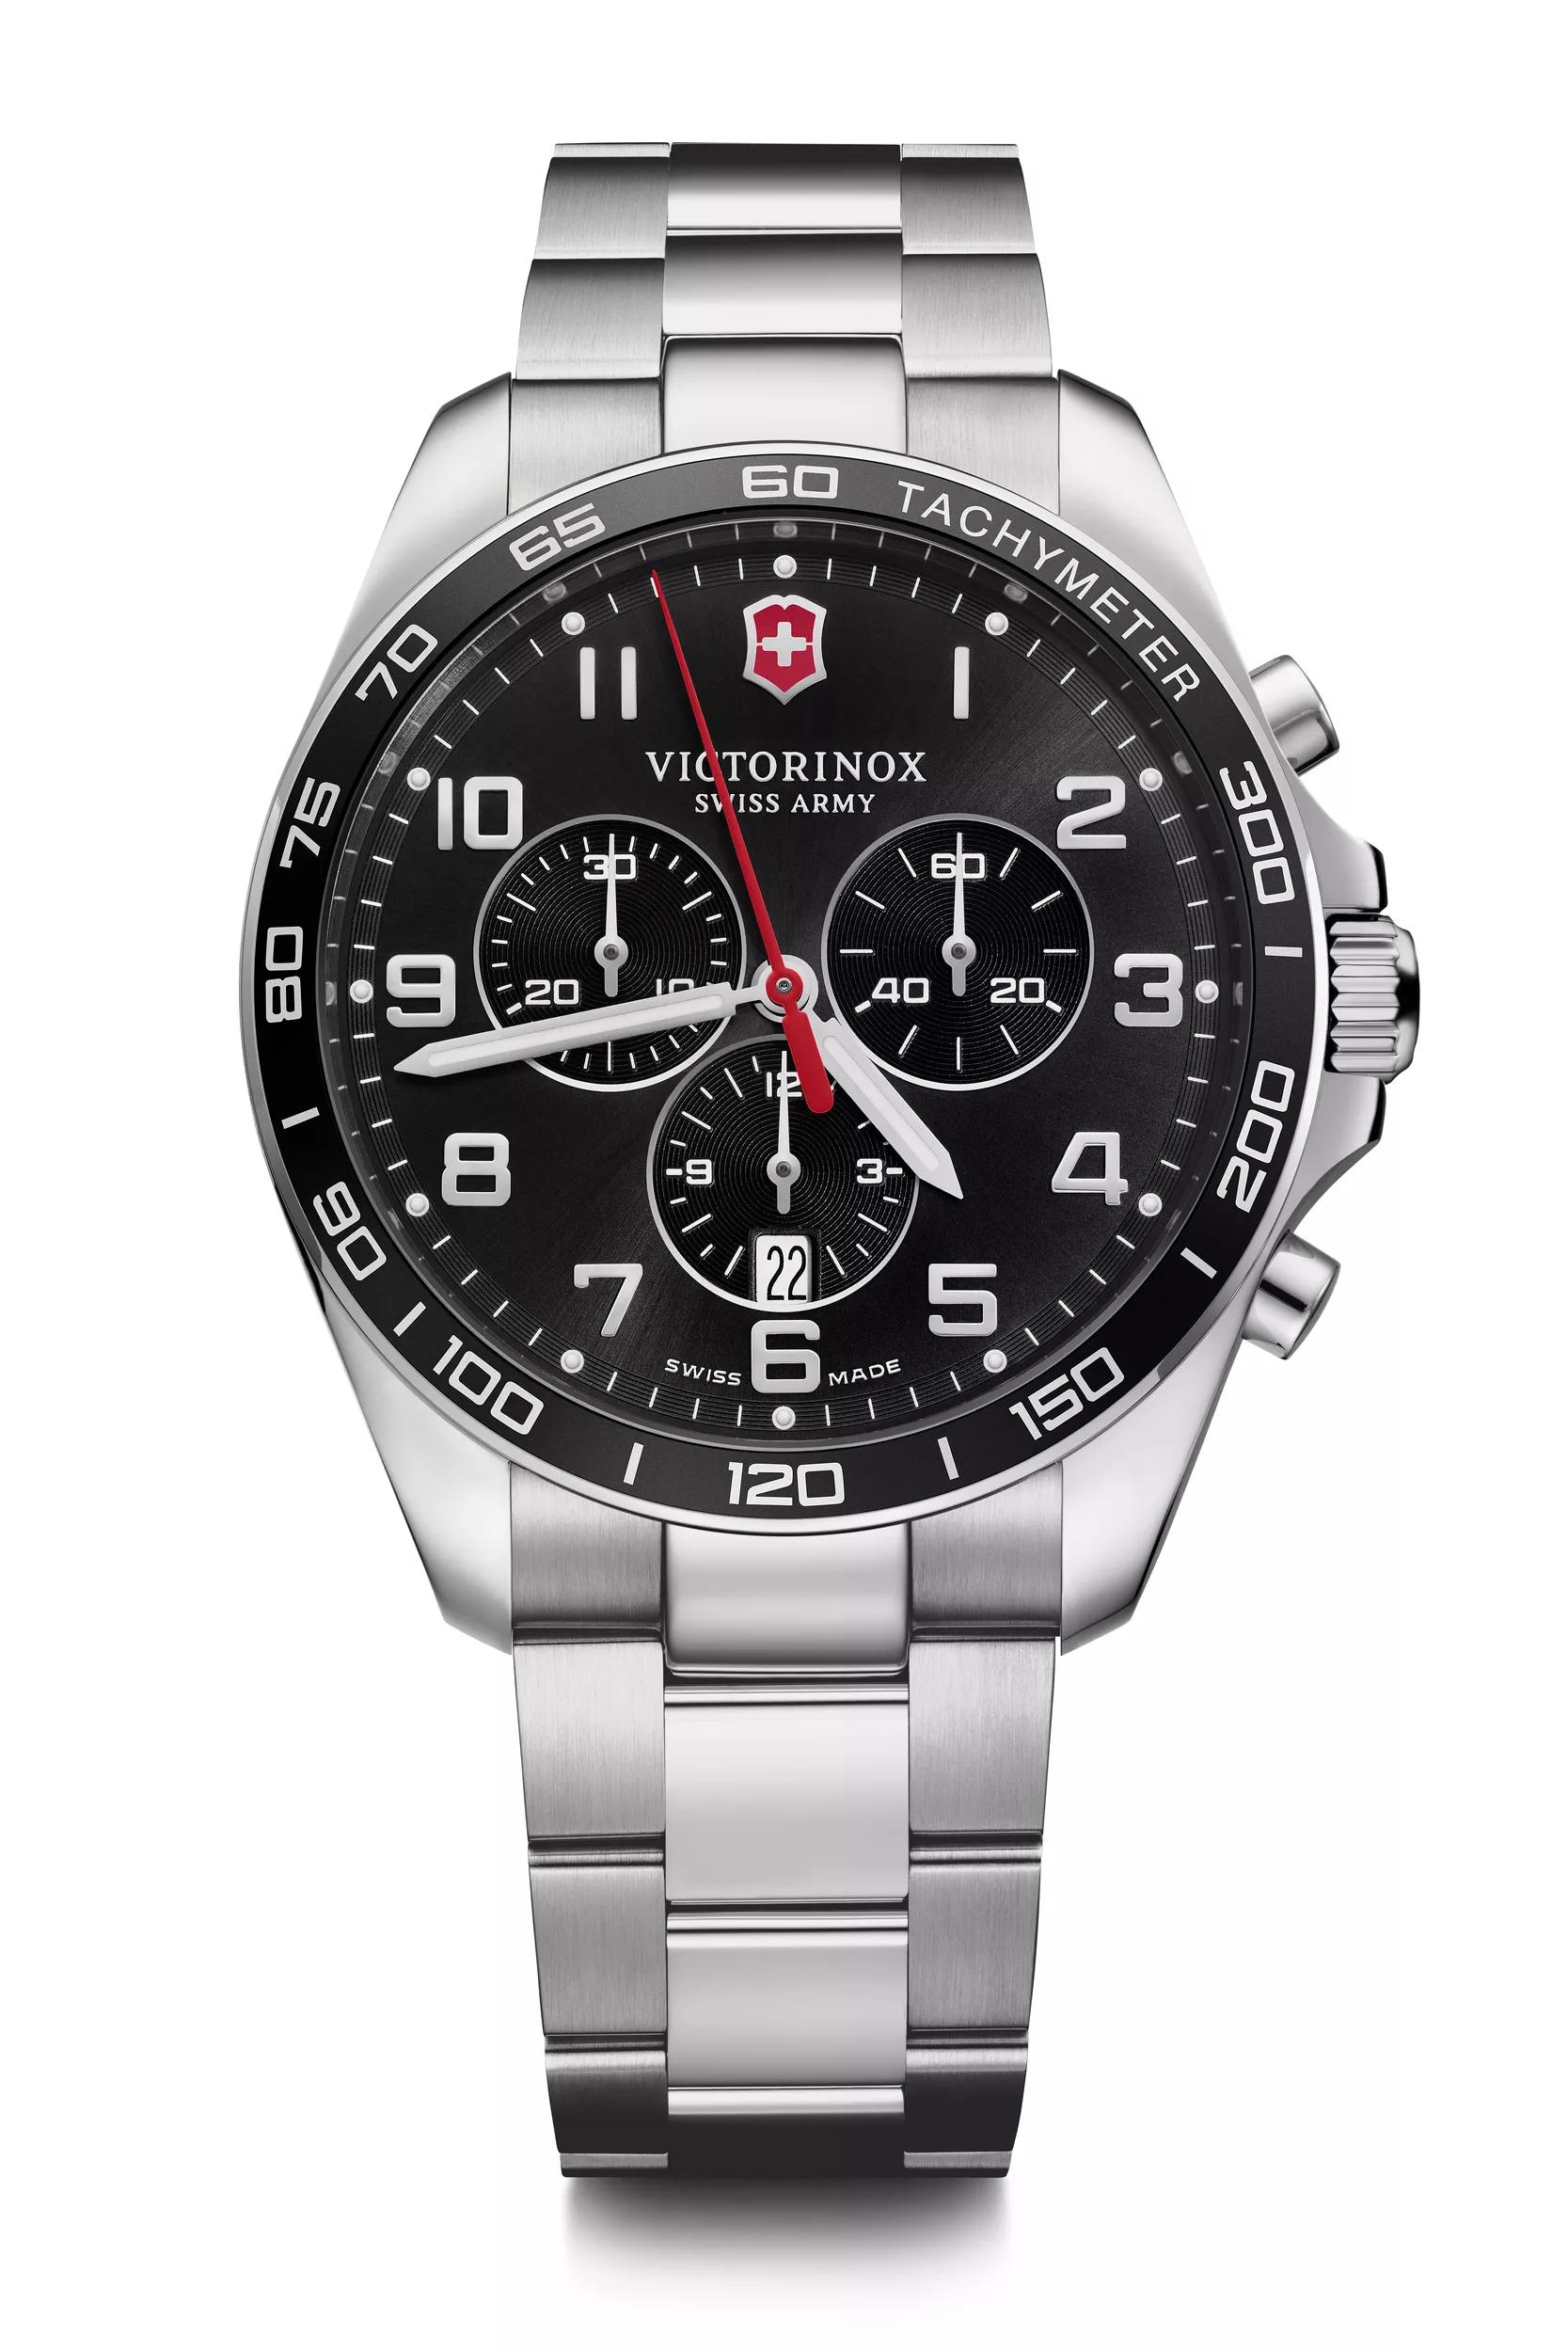 値下げ 稼動★ビクトリノックス クロノクラシック QZ腕時計 革ベルト新品商品名VICTO